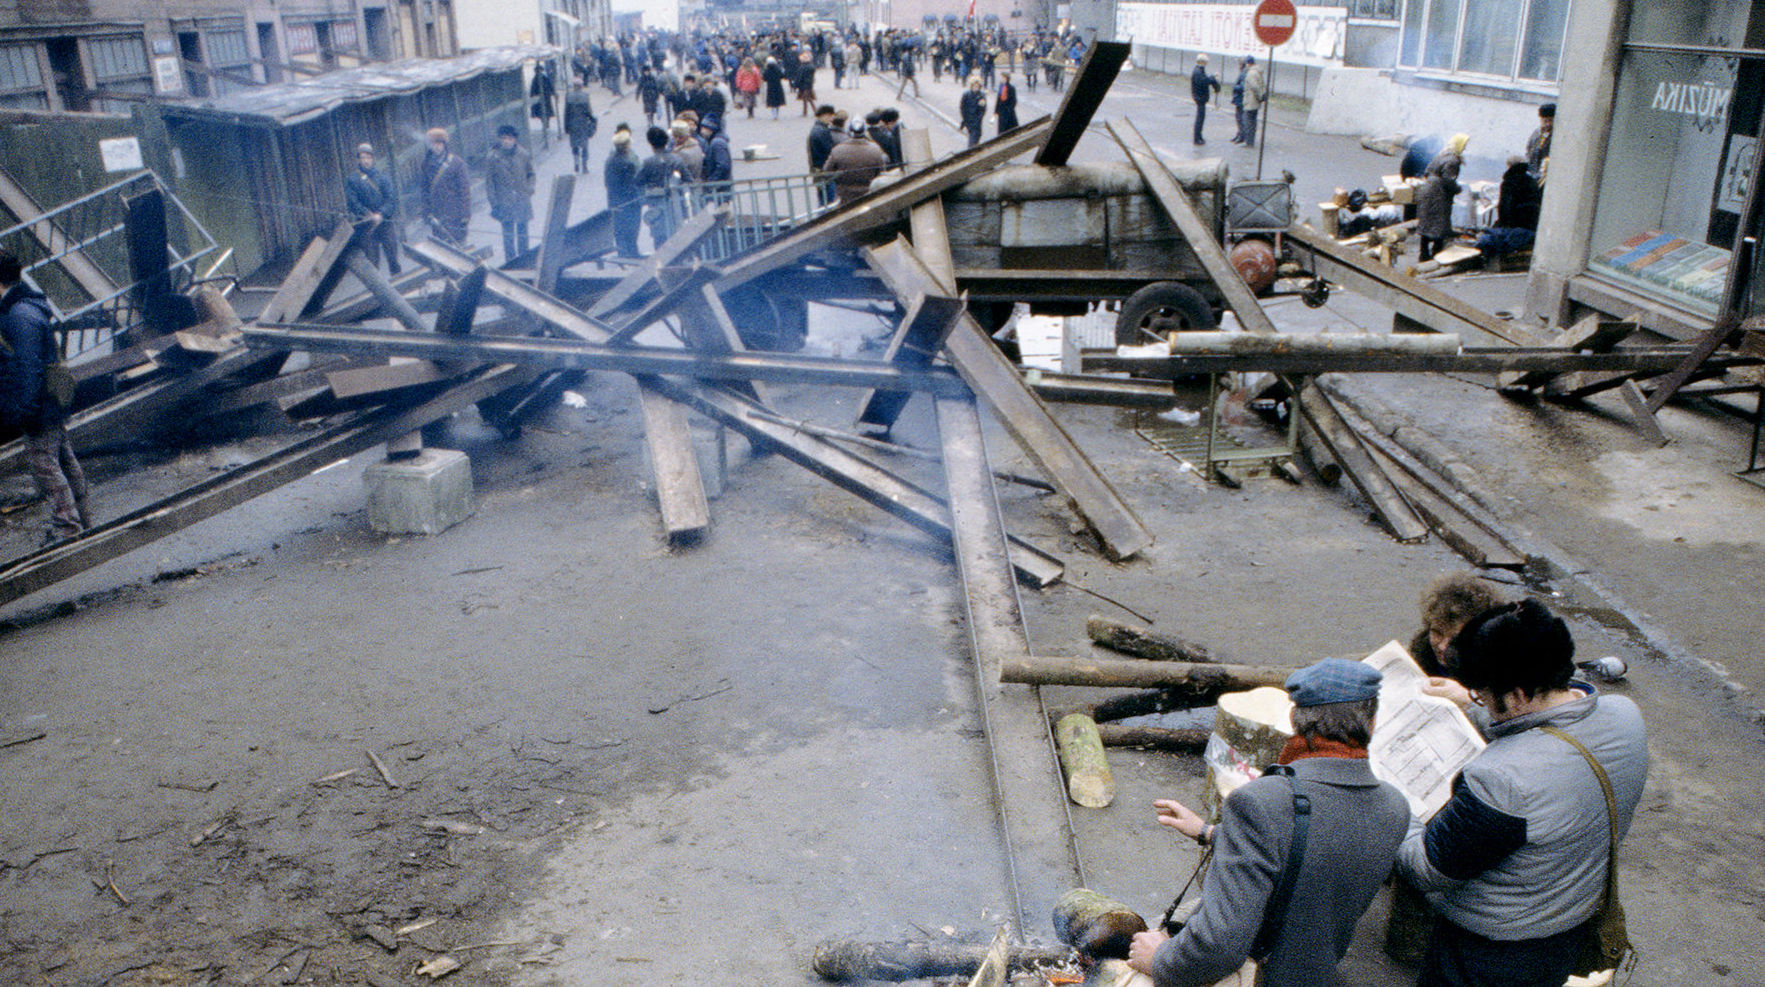 Баррикады в Риге, архивное фото 1991 года